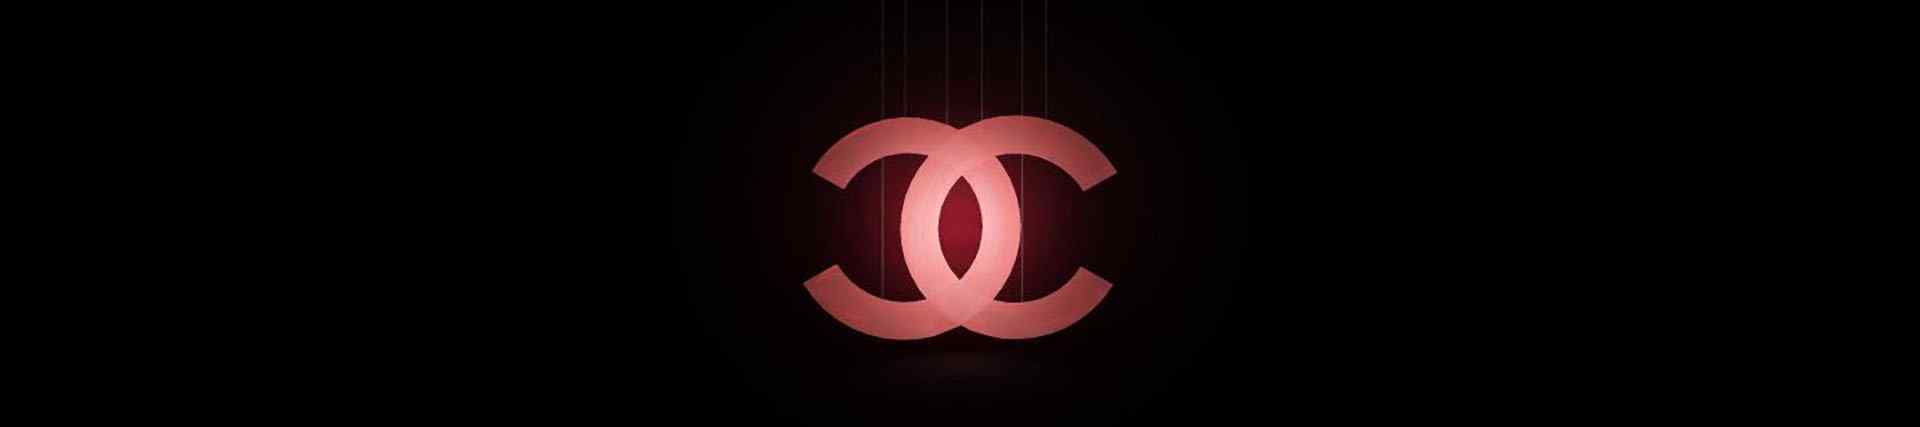 法国品牌香奈儿Chanel_香奈儿壁纸_香奈儿logo图片_coco chanel图片_奢侈品牌香奈儿图片_品牌壁纸图片